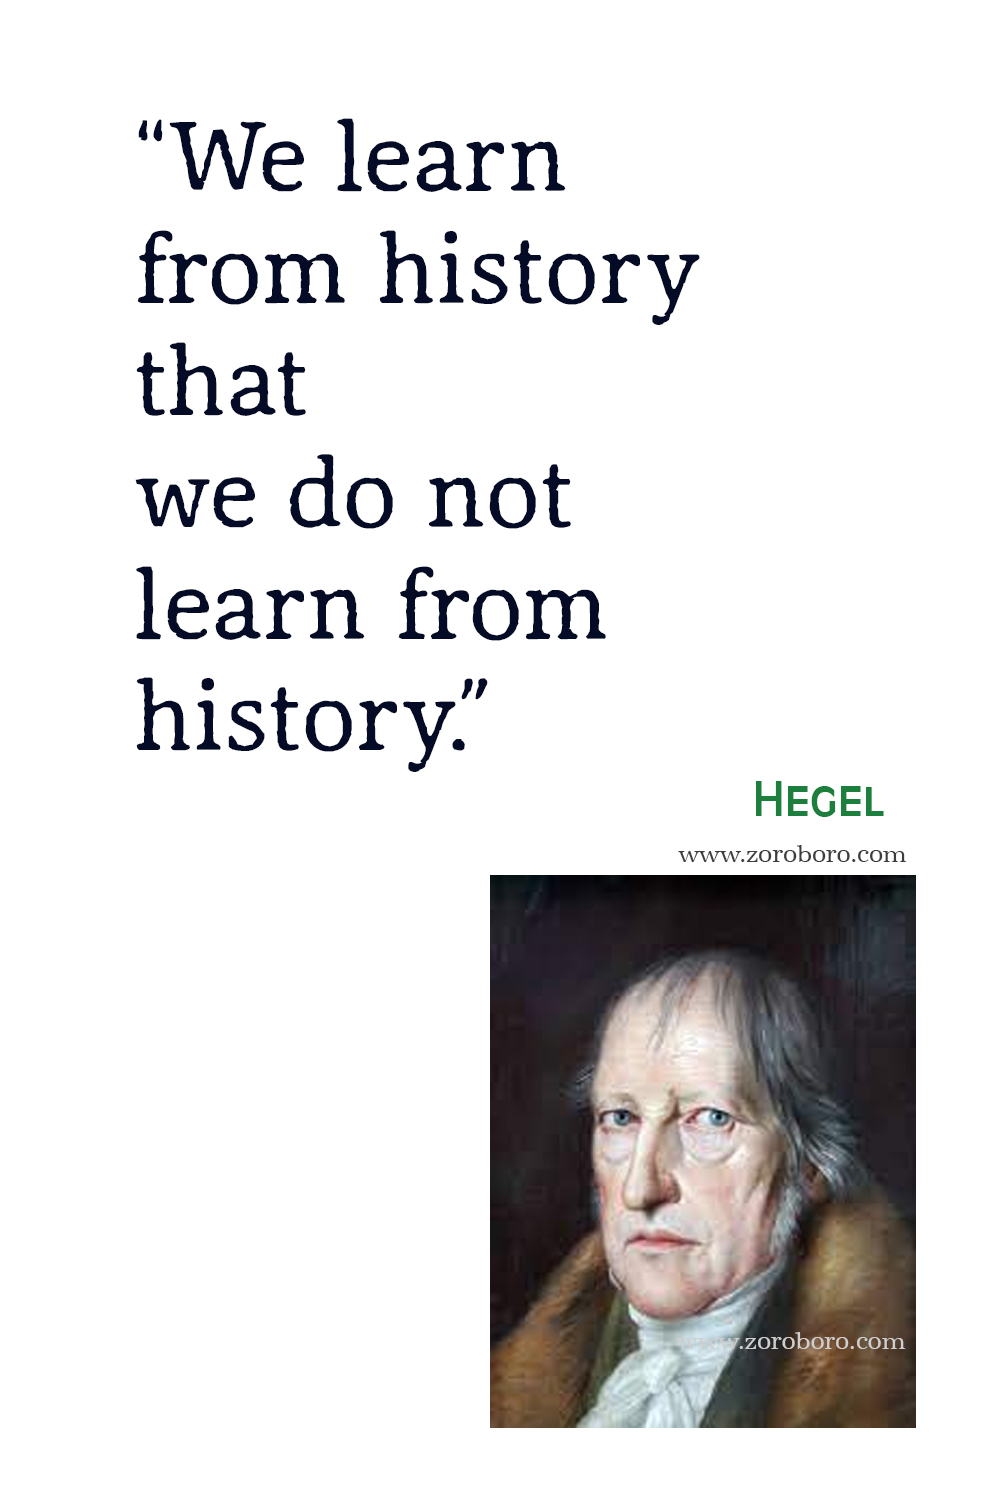 Georg Wilhelm Friedrich Hegel Quotes, Hegel Philosophy, Hegel Books Quotes, Hegel Theory, Hegel Quotes, Hegel Writing, Georg Wilhelm Friedrich Hegel